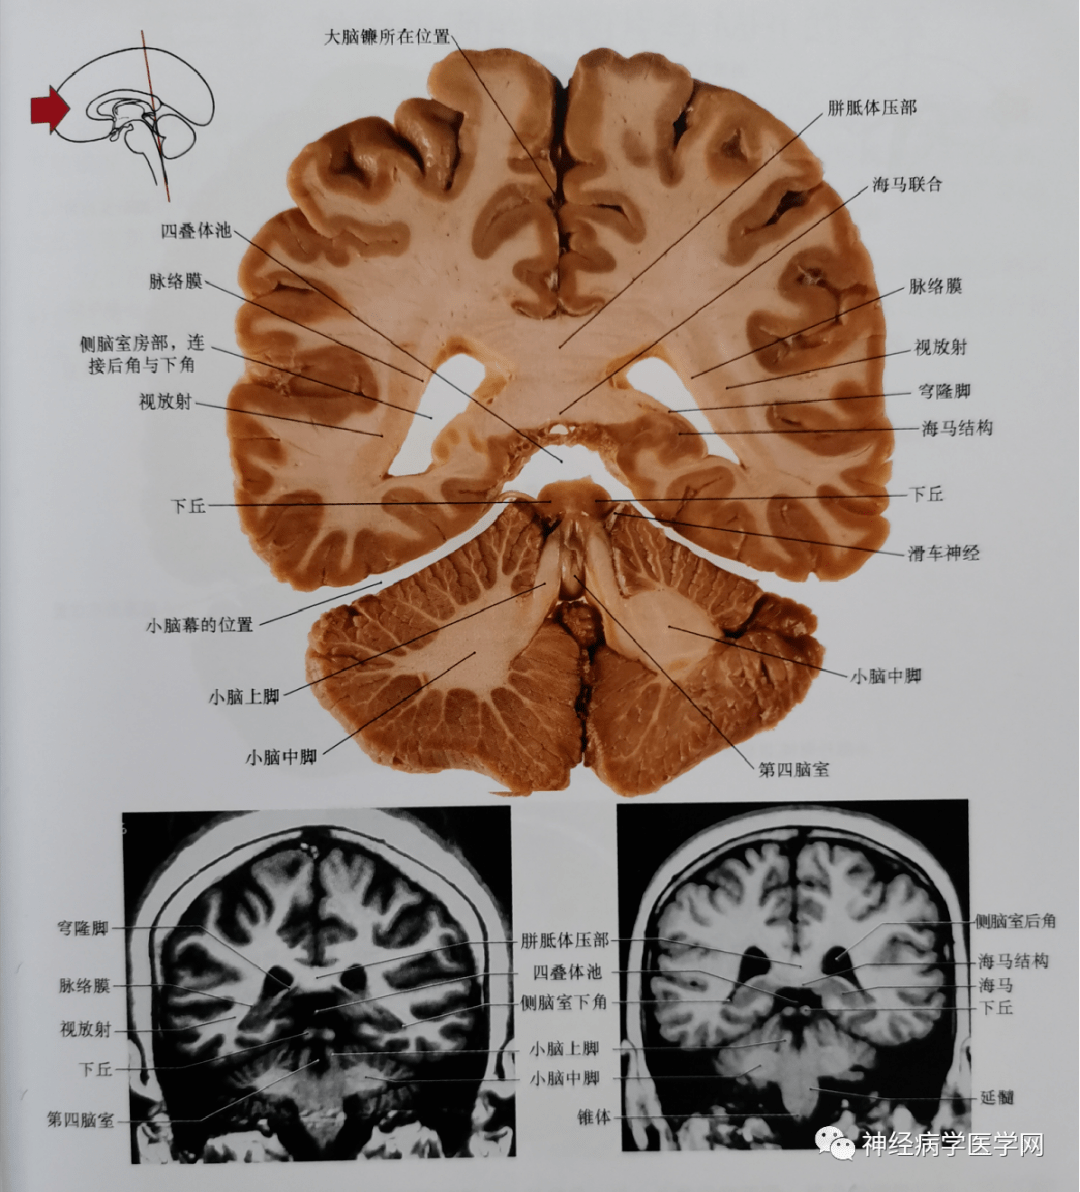 临床神经解剖图谱(断层影像 切片)